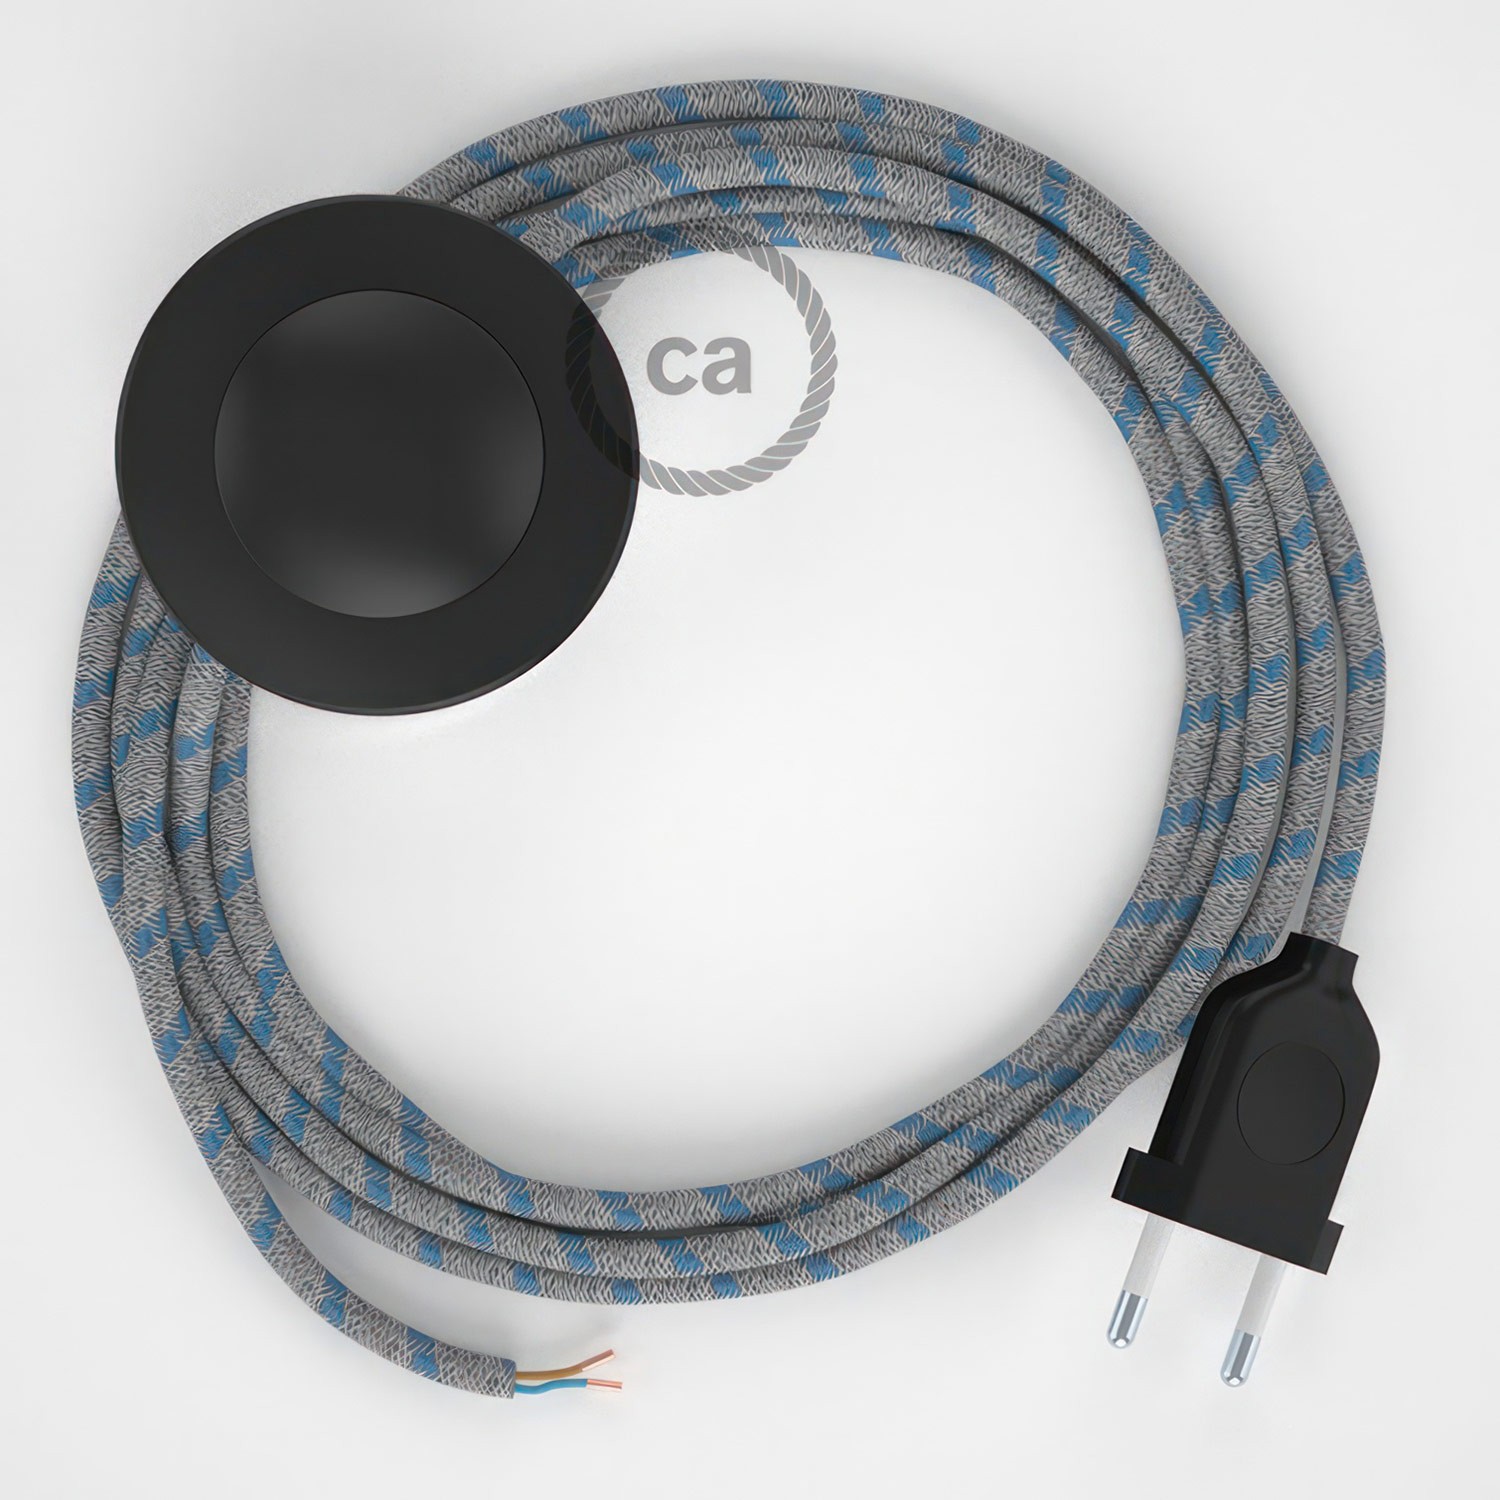 Cableado para lámpara de pie, cable RD55 Stripes Azul Steward 3 m. Elige tu el color de la clavija y del interruptor!